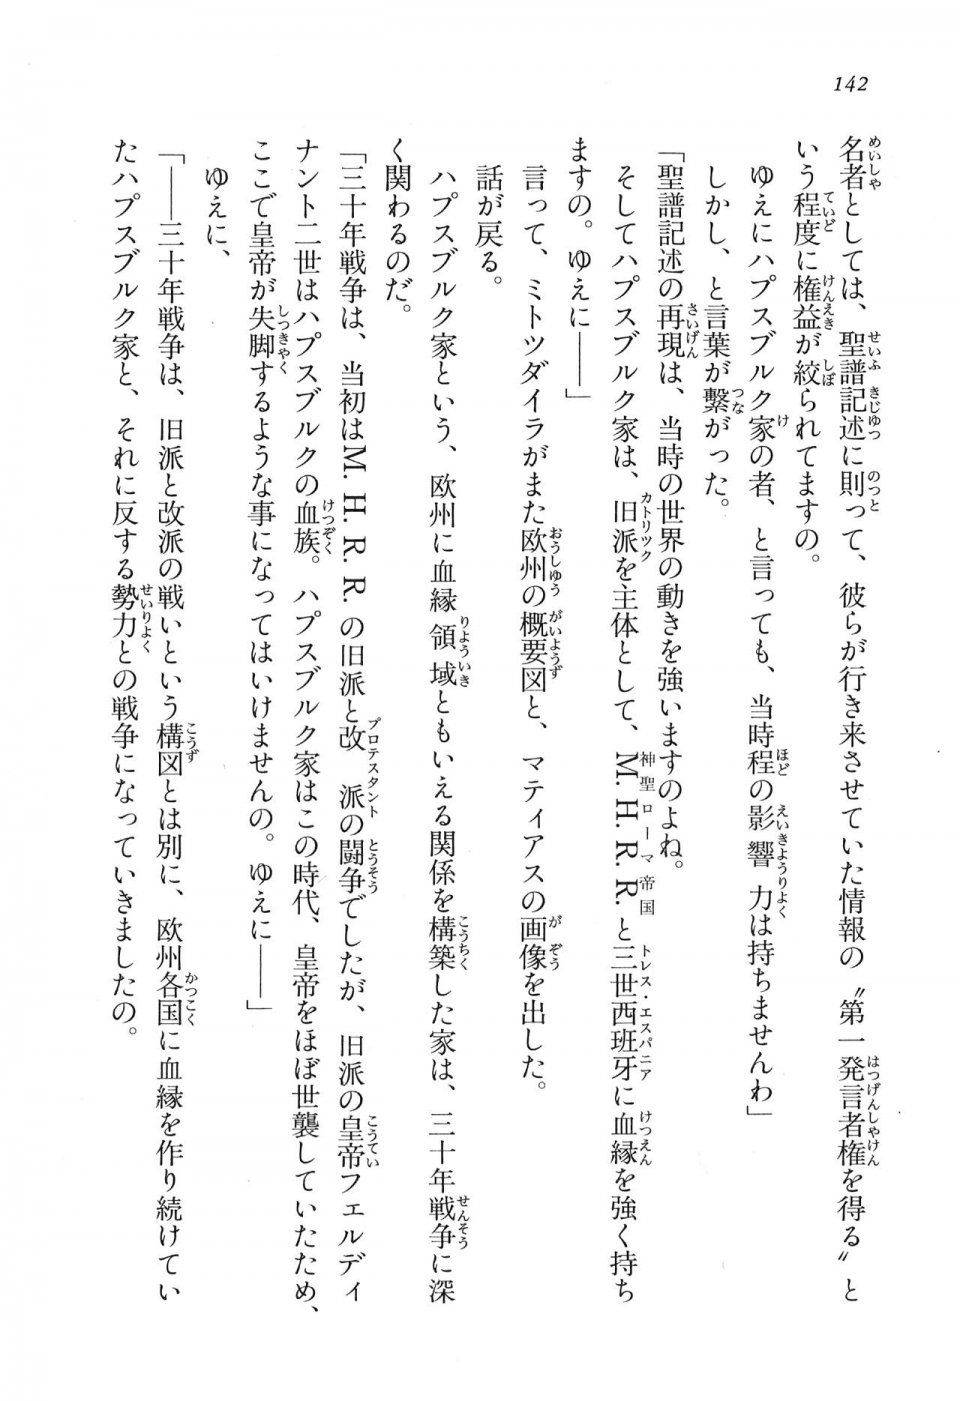 Kyoukai Senjou no Horizon LN Vol 16(7A) - Photo #142